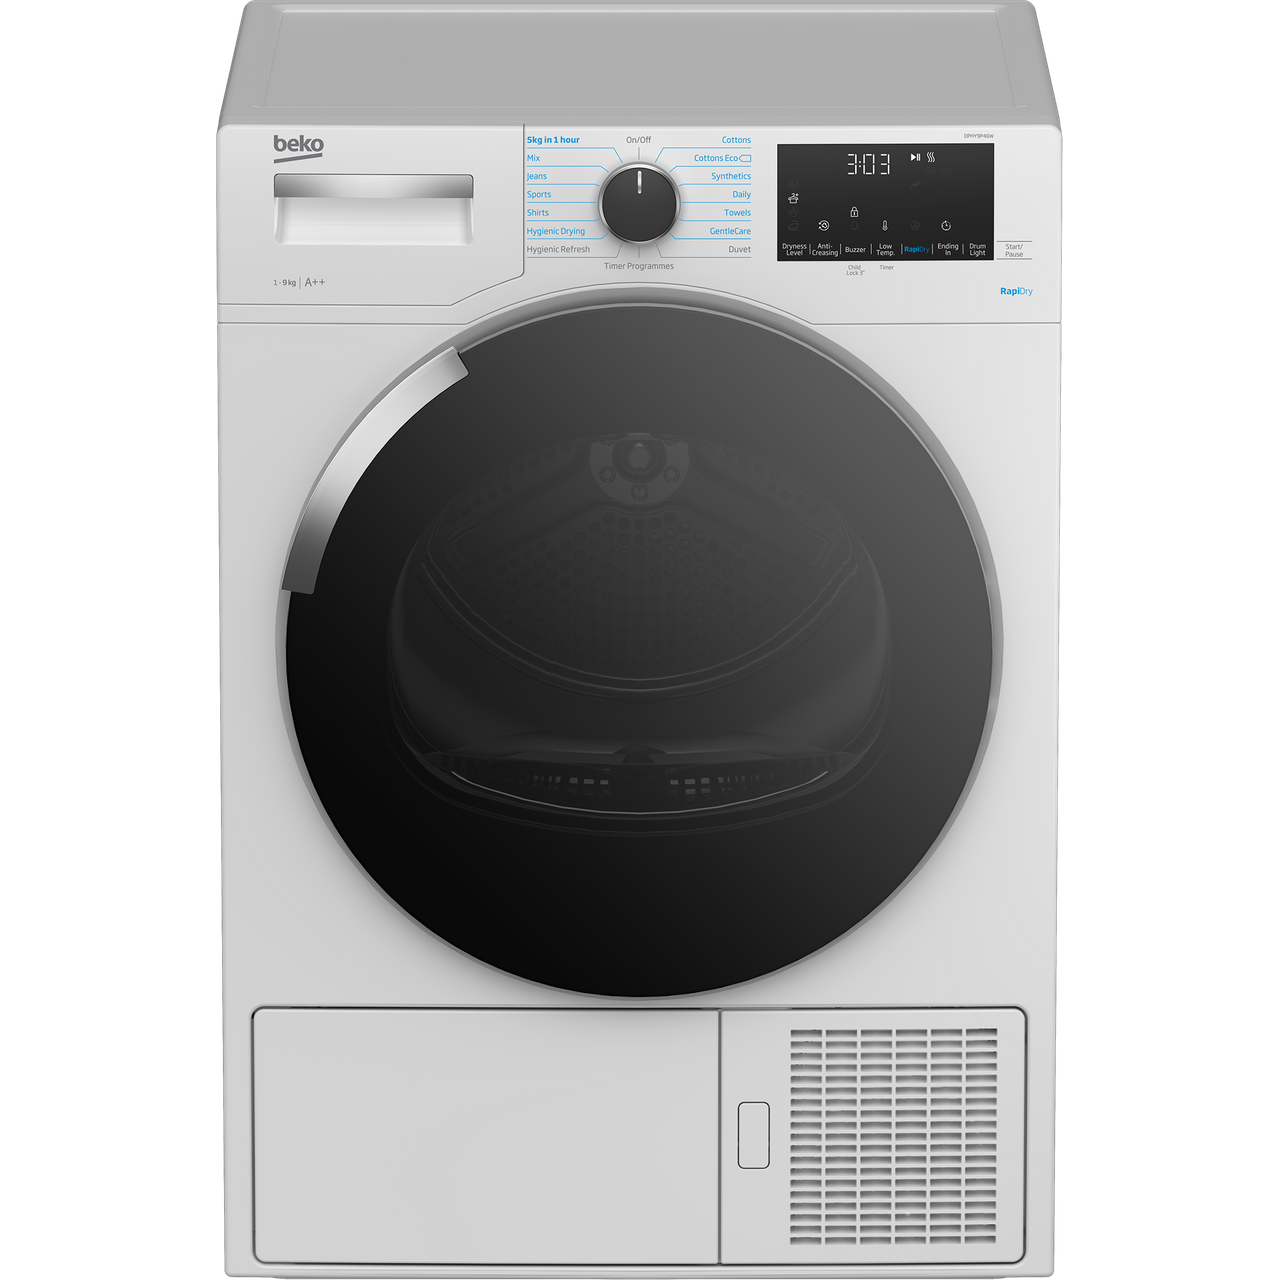 Beko DPHY9P46W 9Kg Heat Pump Tumble Dryer Review